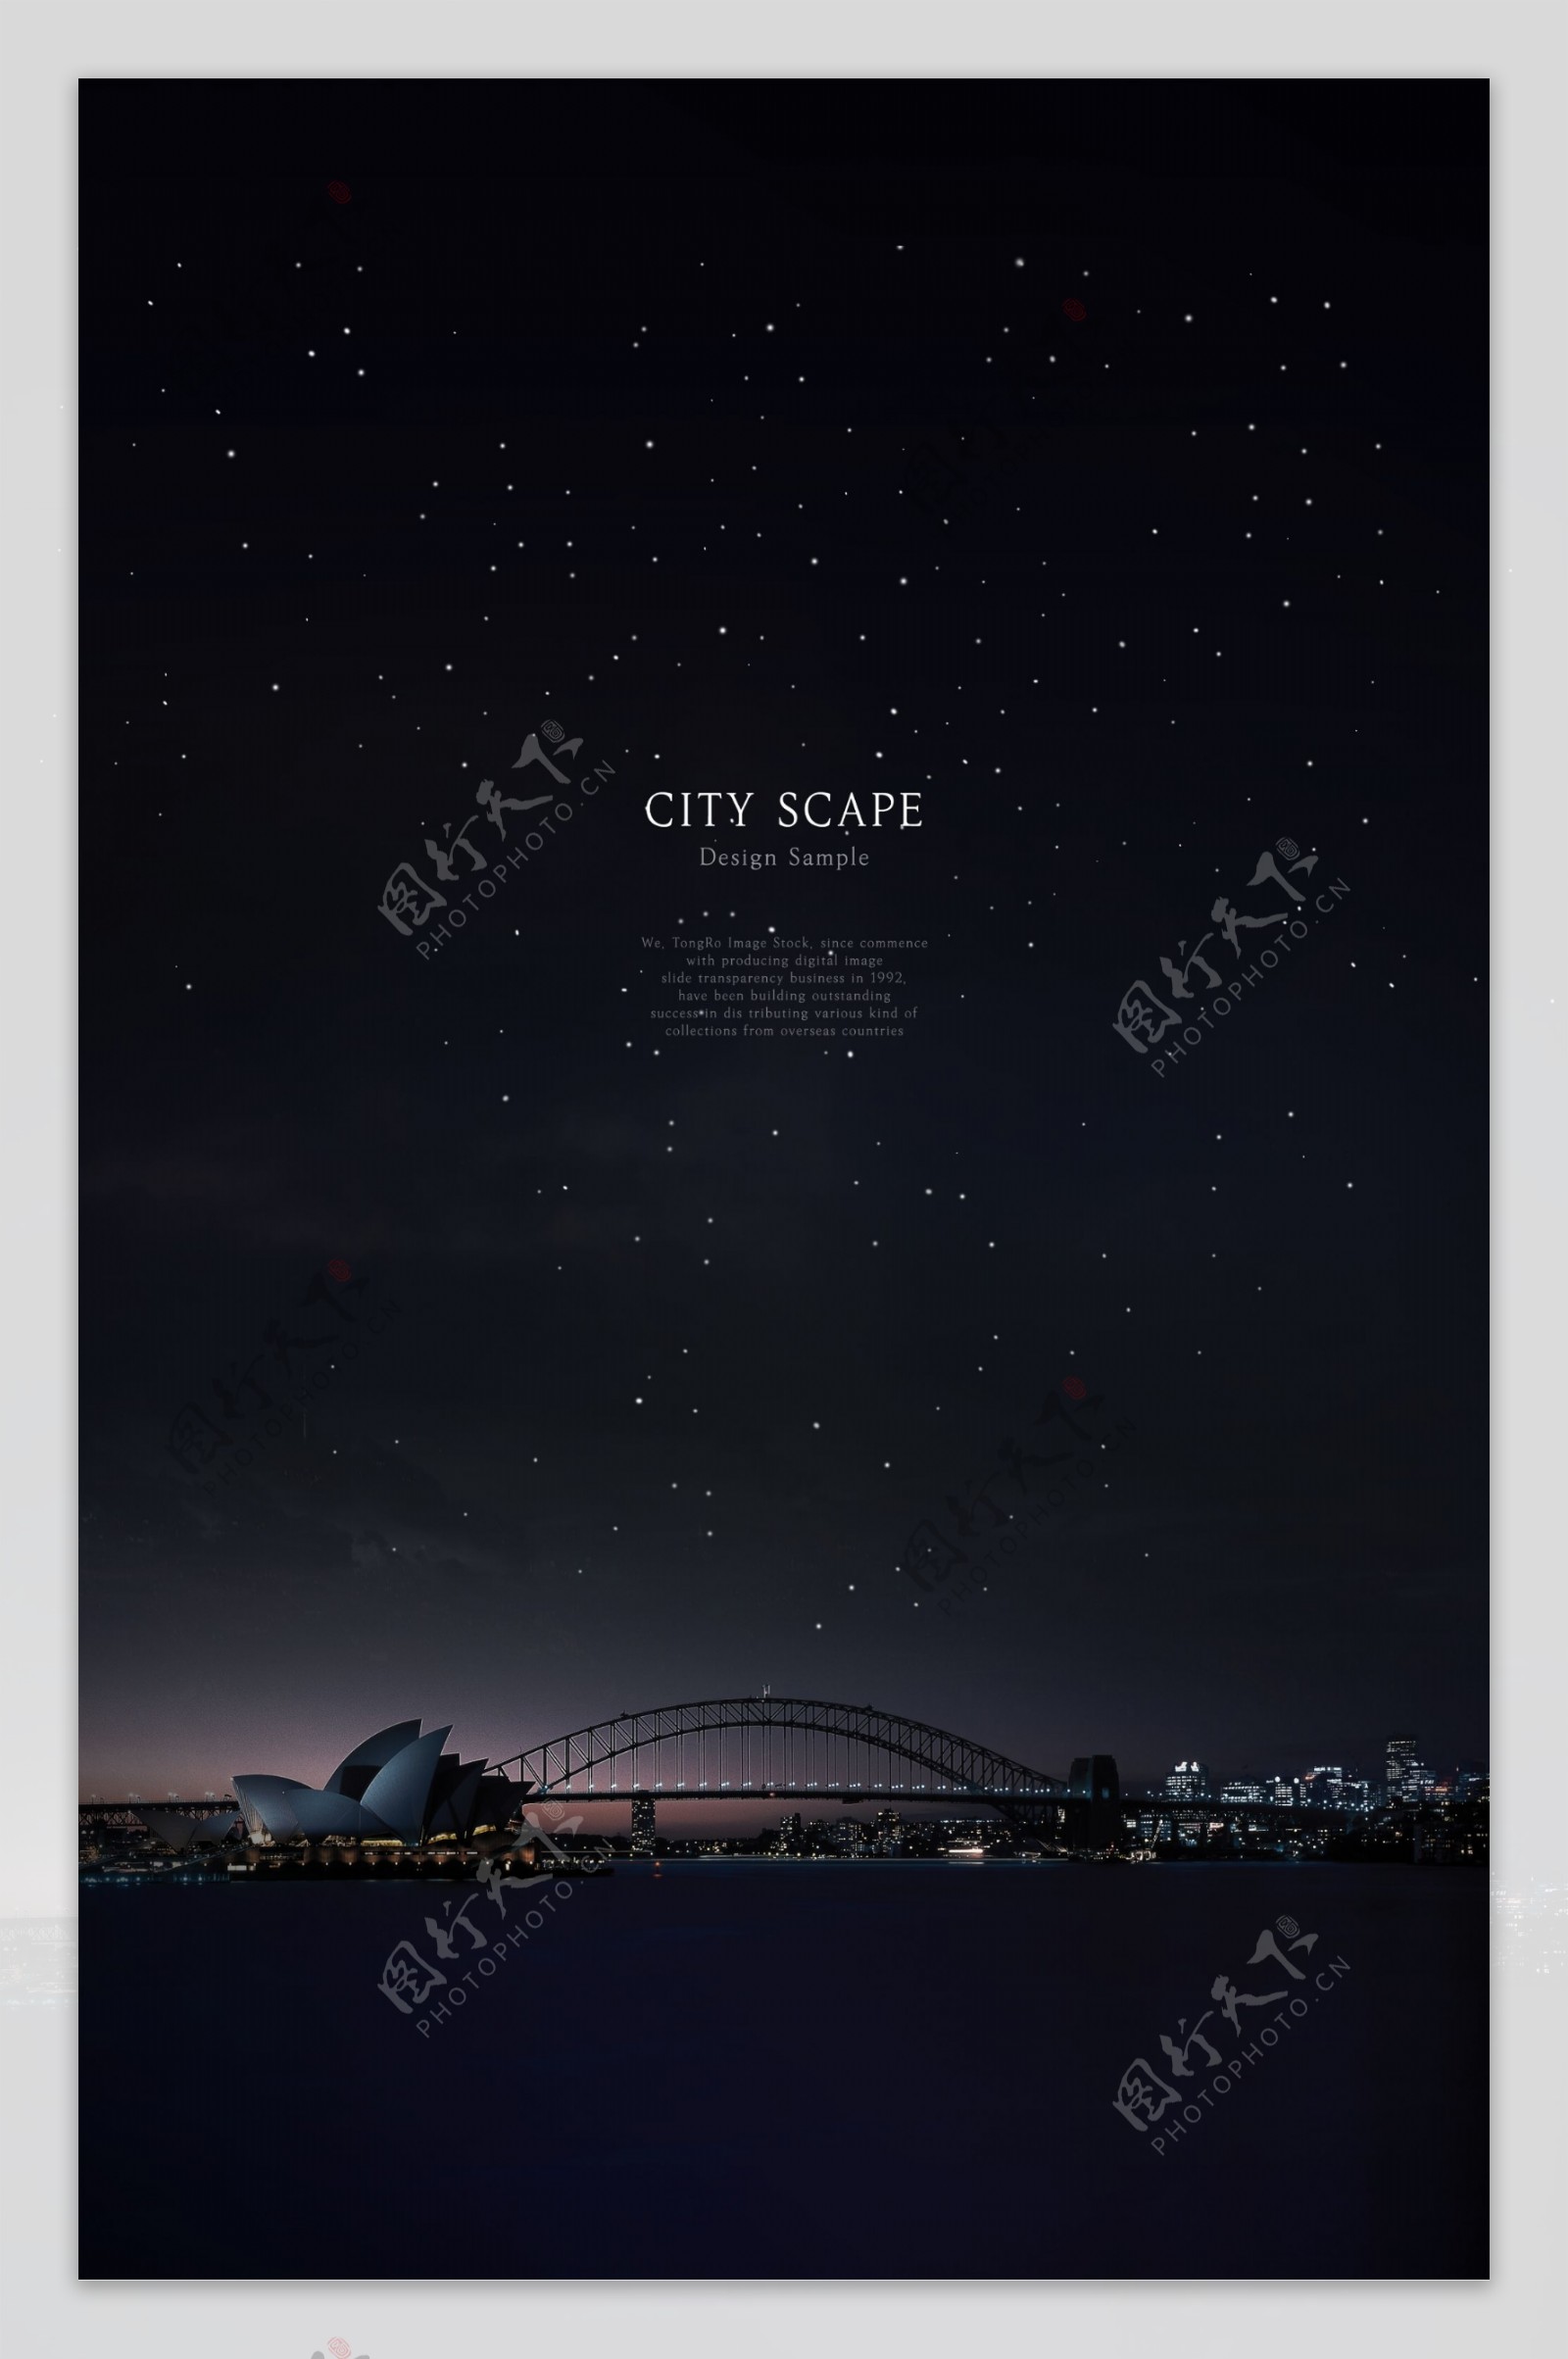 城市夜景房地产广告海报设计素材